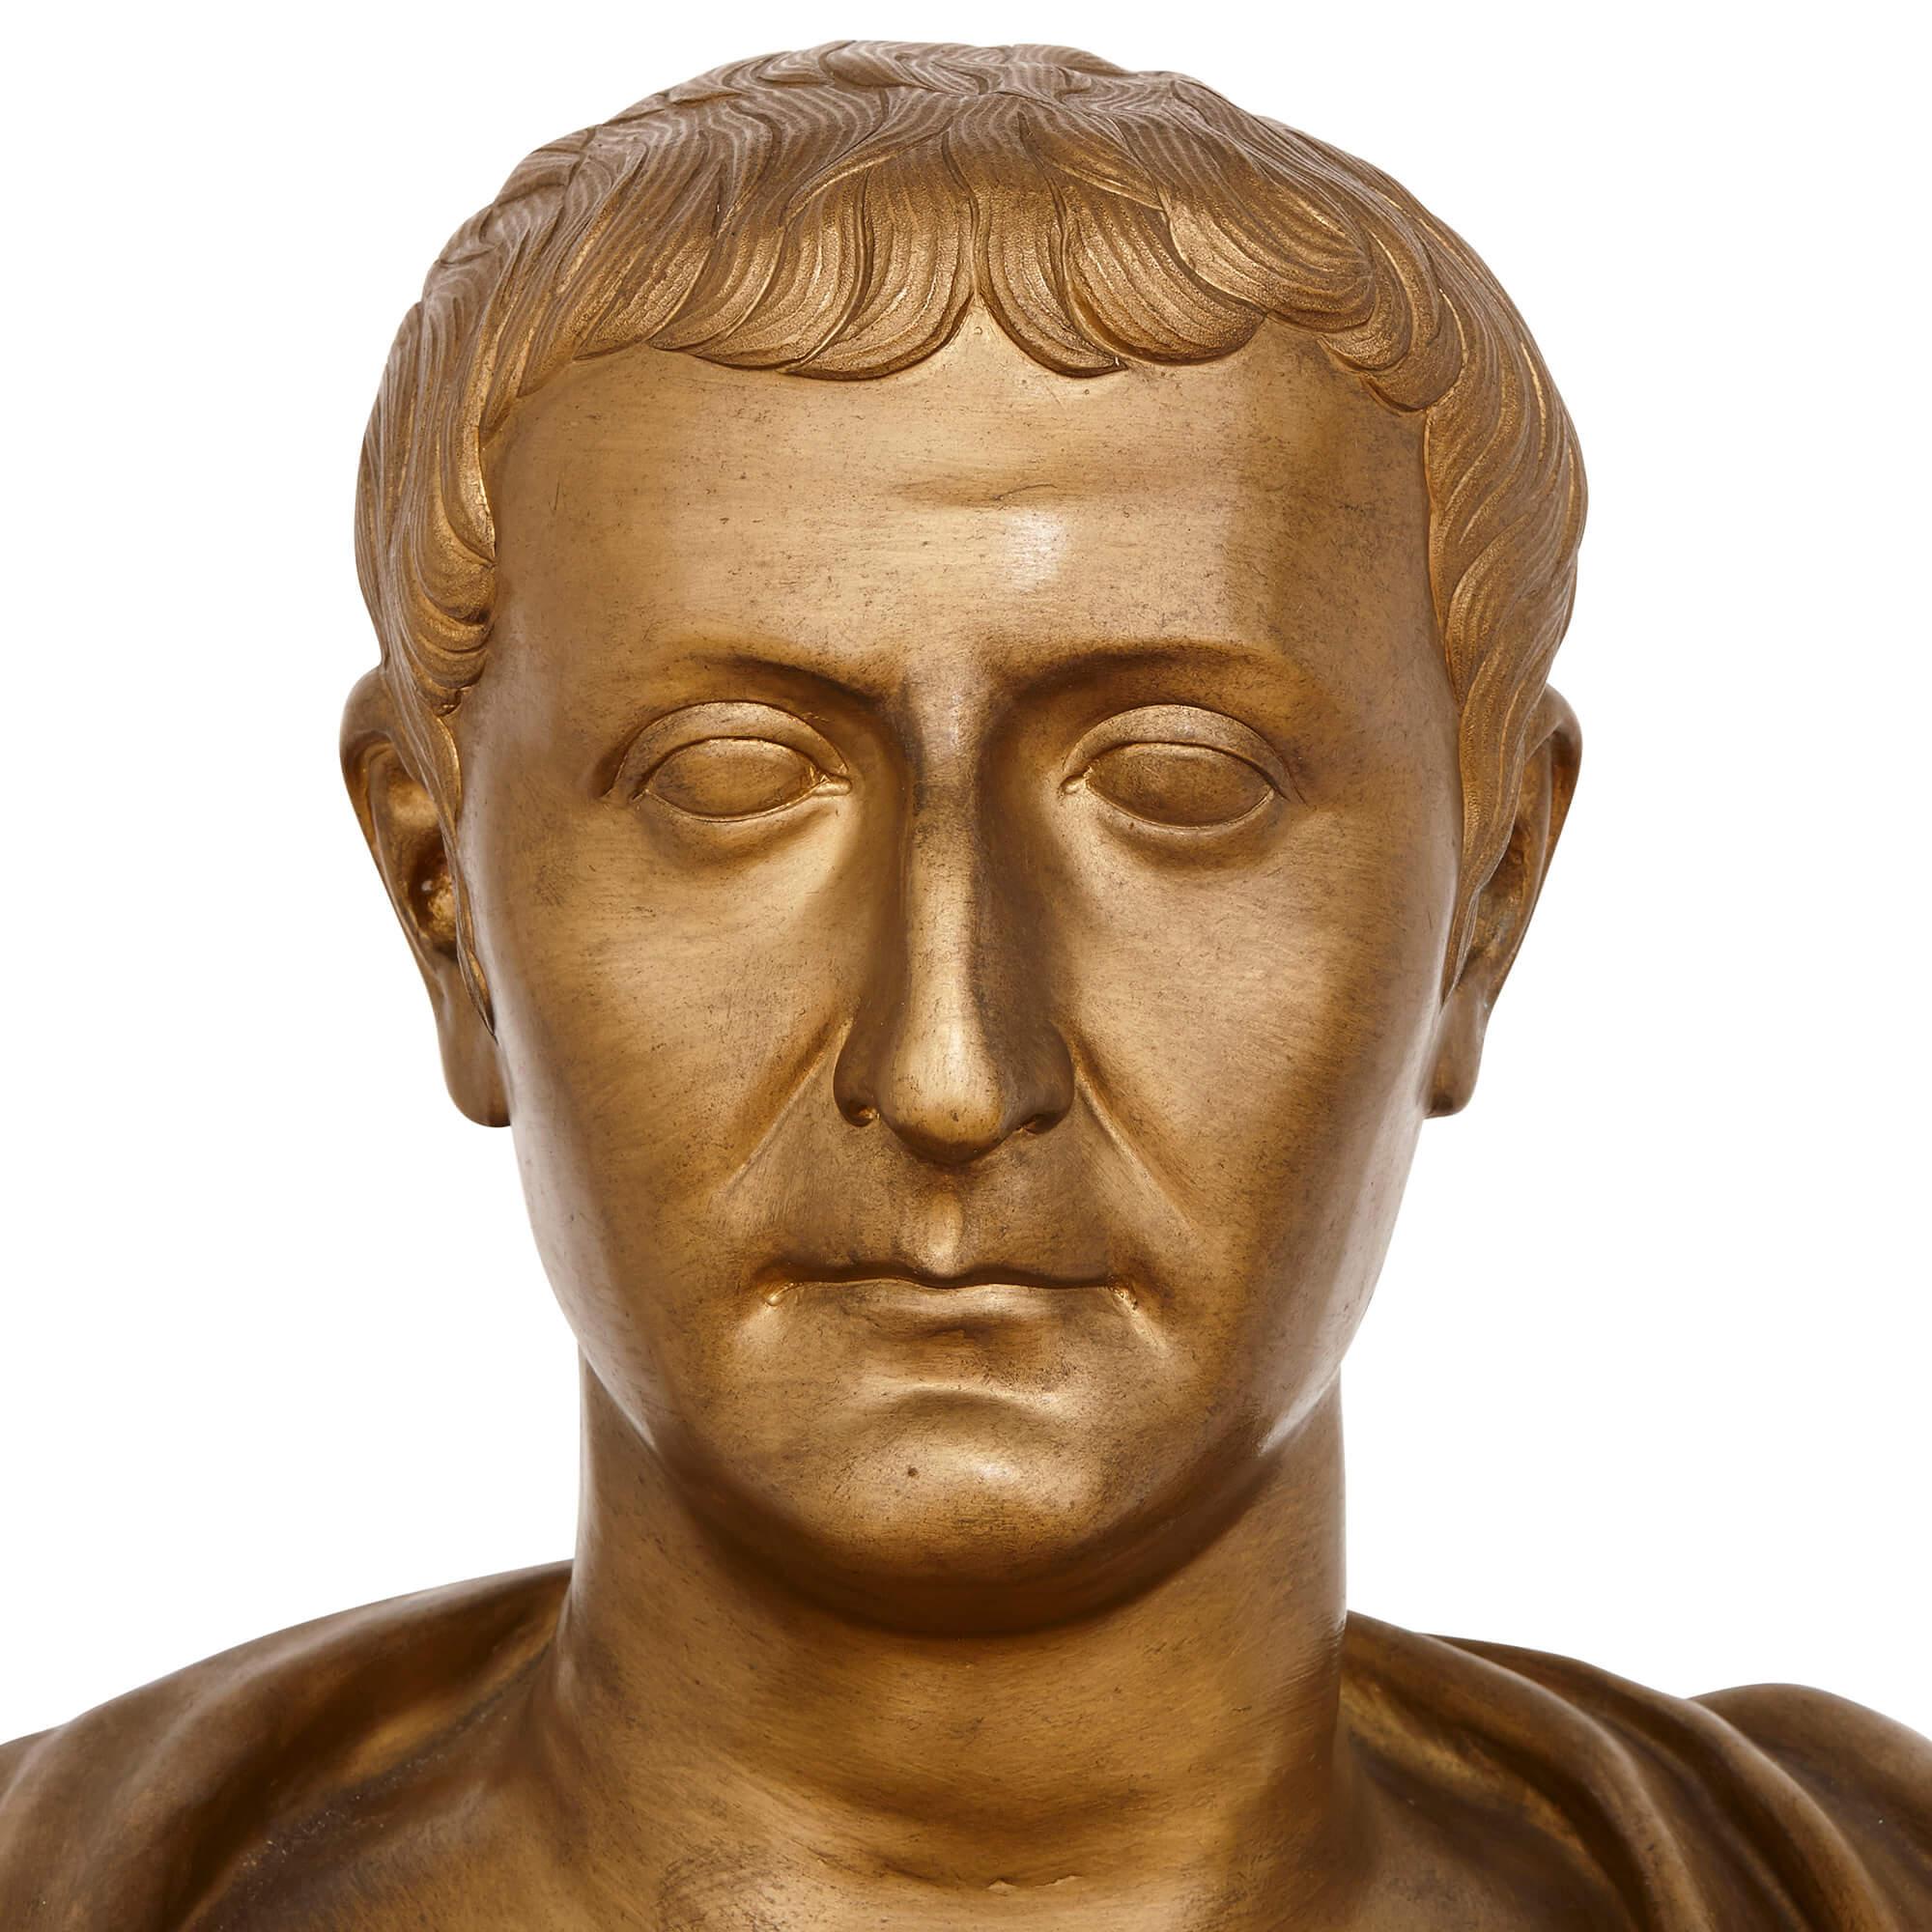 Ce remarquable buste en bronze doré de l'emblématique empereur romain Jules César est la quintessence du style néoclassique et était à l'origine destiné à décorer une porte. Les overdoors - éléments décoratifs appliqués au-dessus des portes - sont